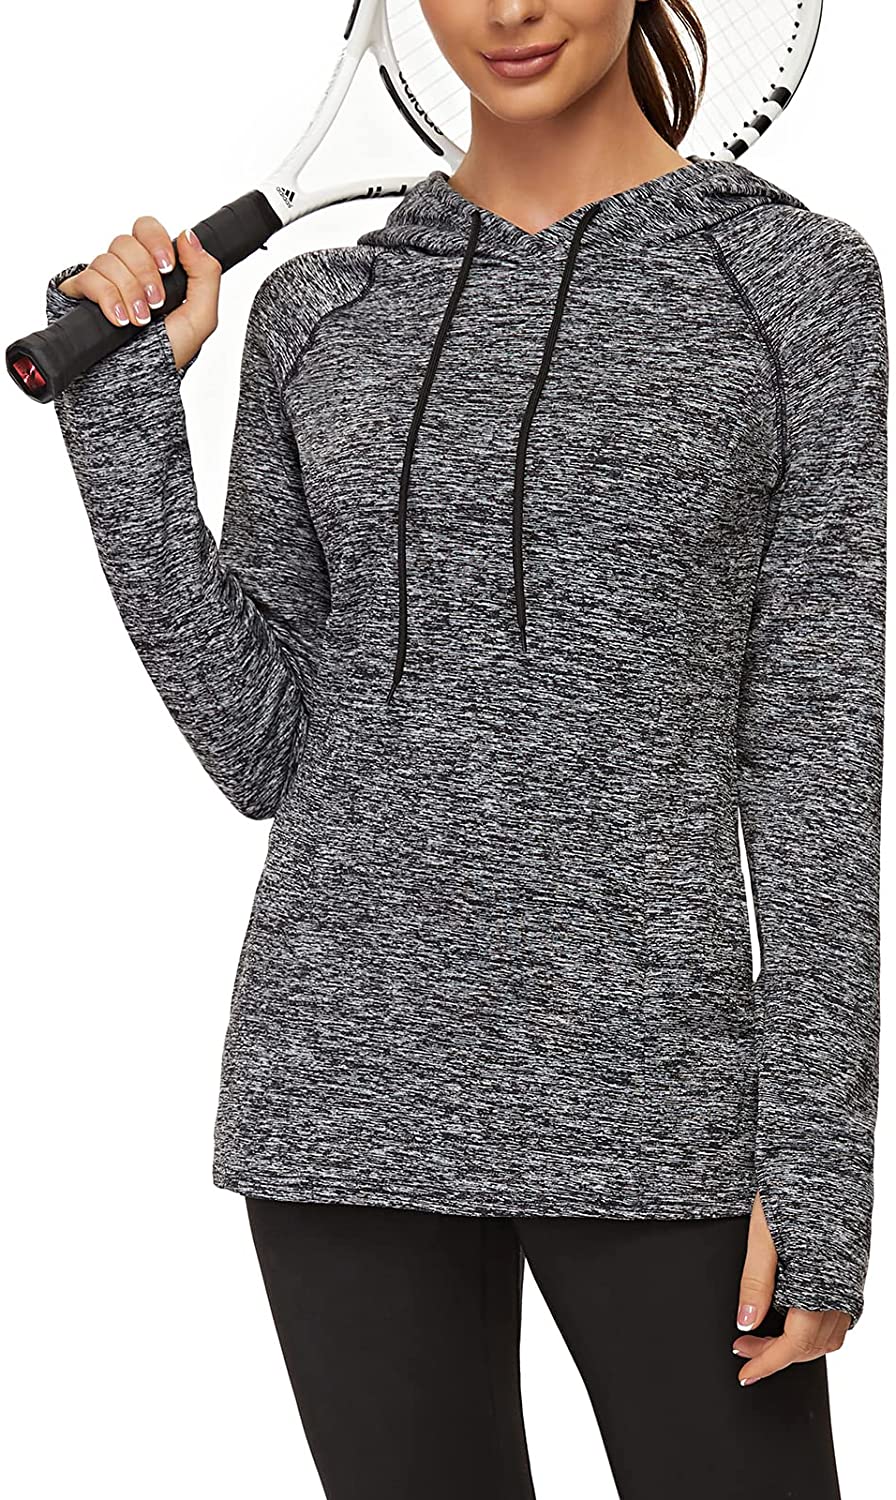 thumbnail 20  - Soneven Women Fleece Thermal Long Sleeve Running Shirt Workout Tops Moisture Wic